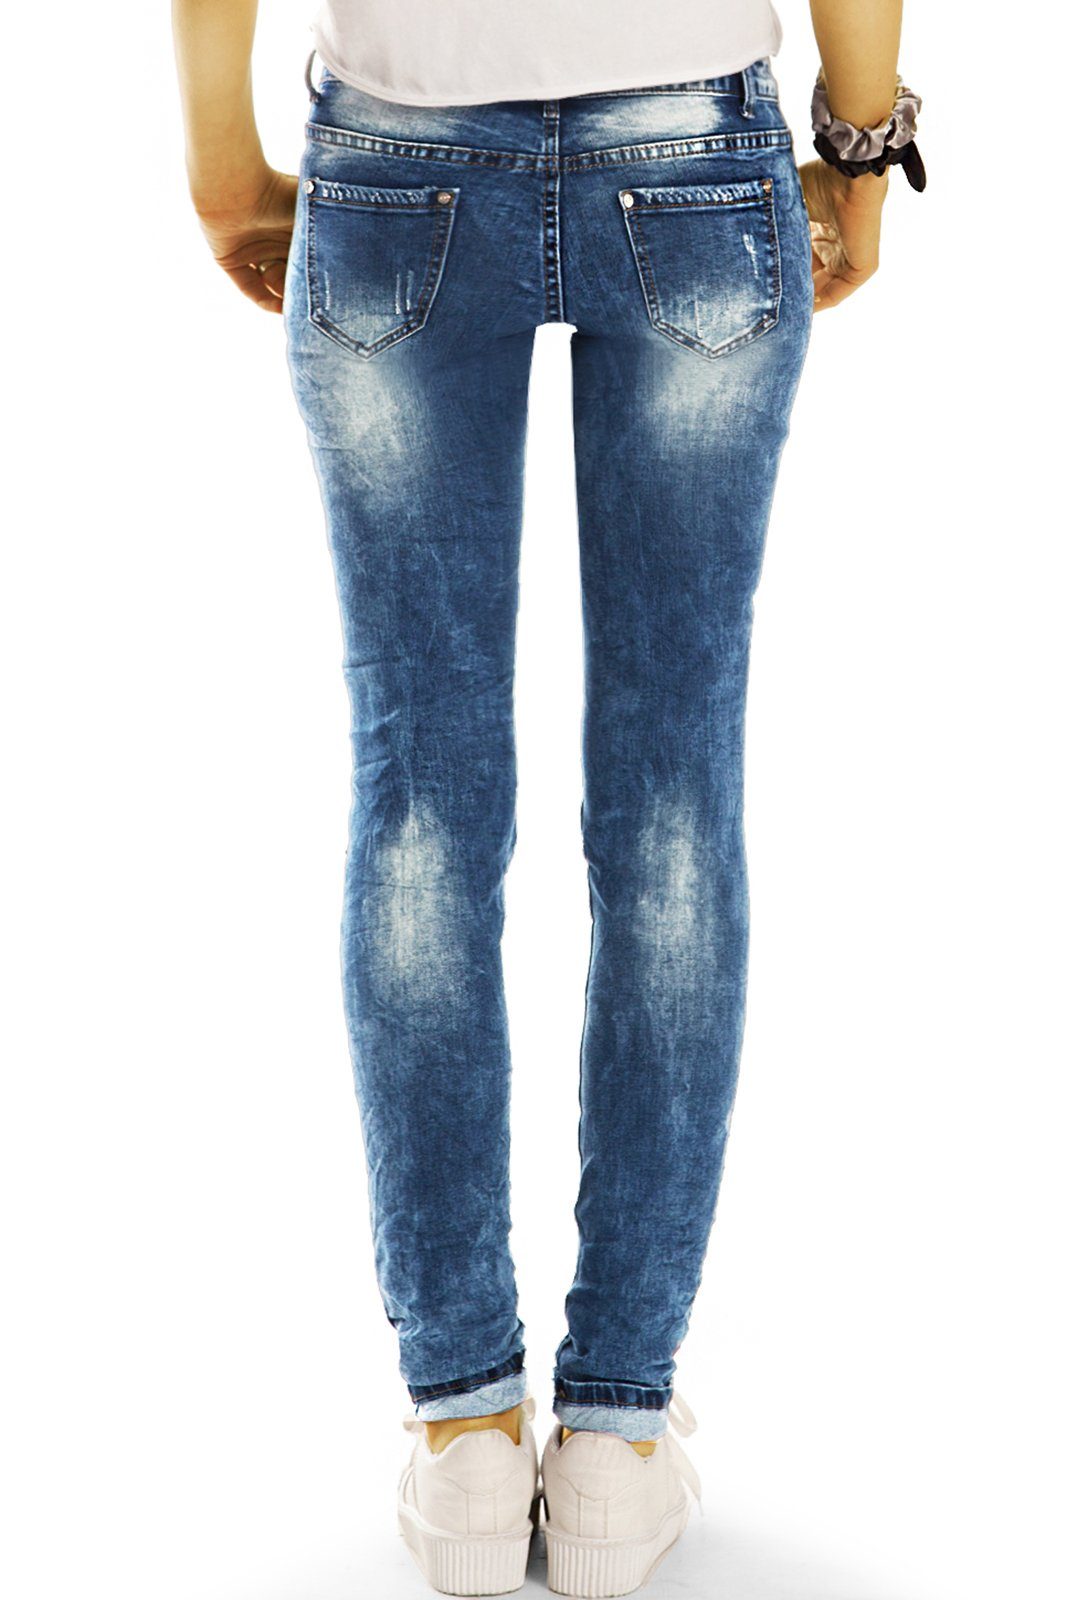 be j31p styled Low - Hüftjeans Rise, Low-rise-Jeans Damen Details auffällige - 5-Pocket-Style Hose Design mit Stretch-Anteil,